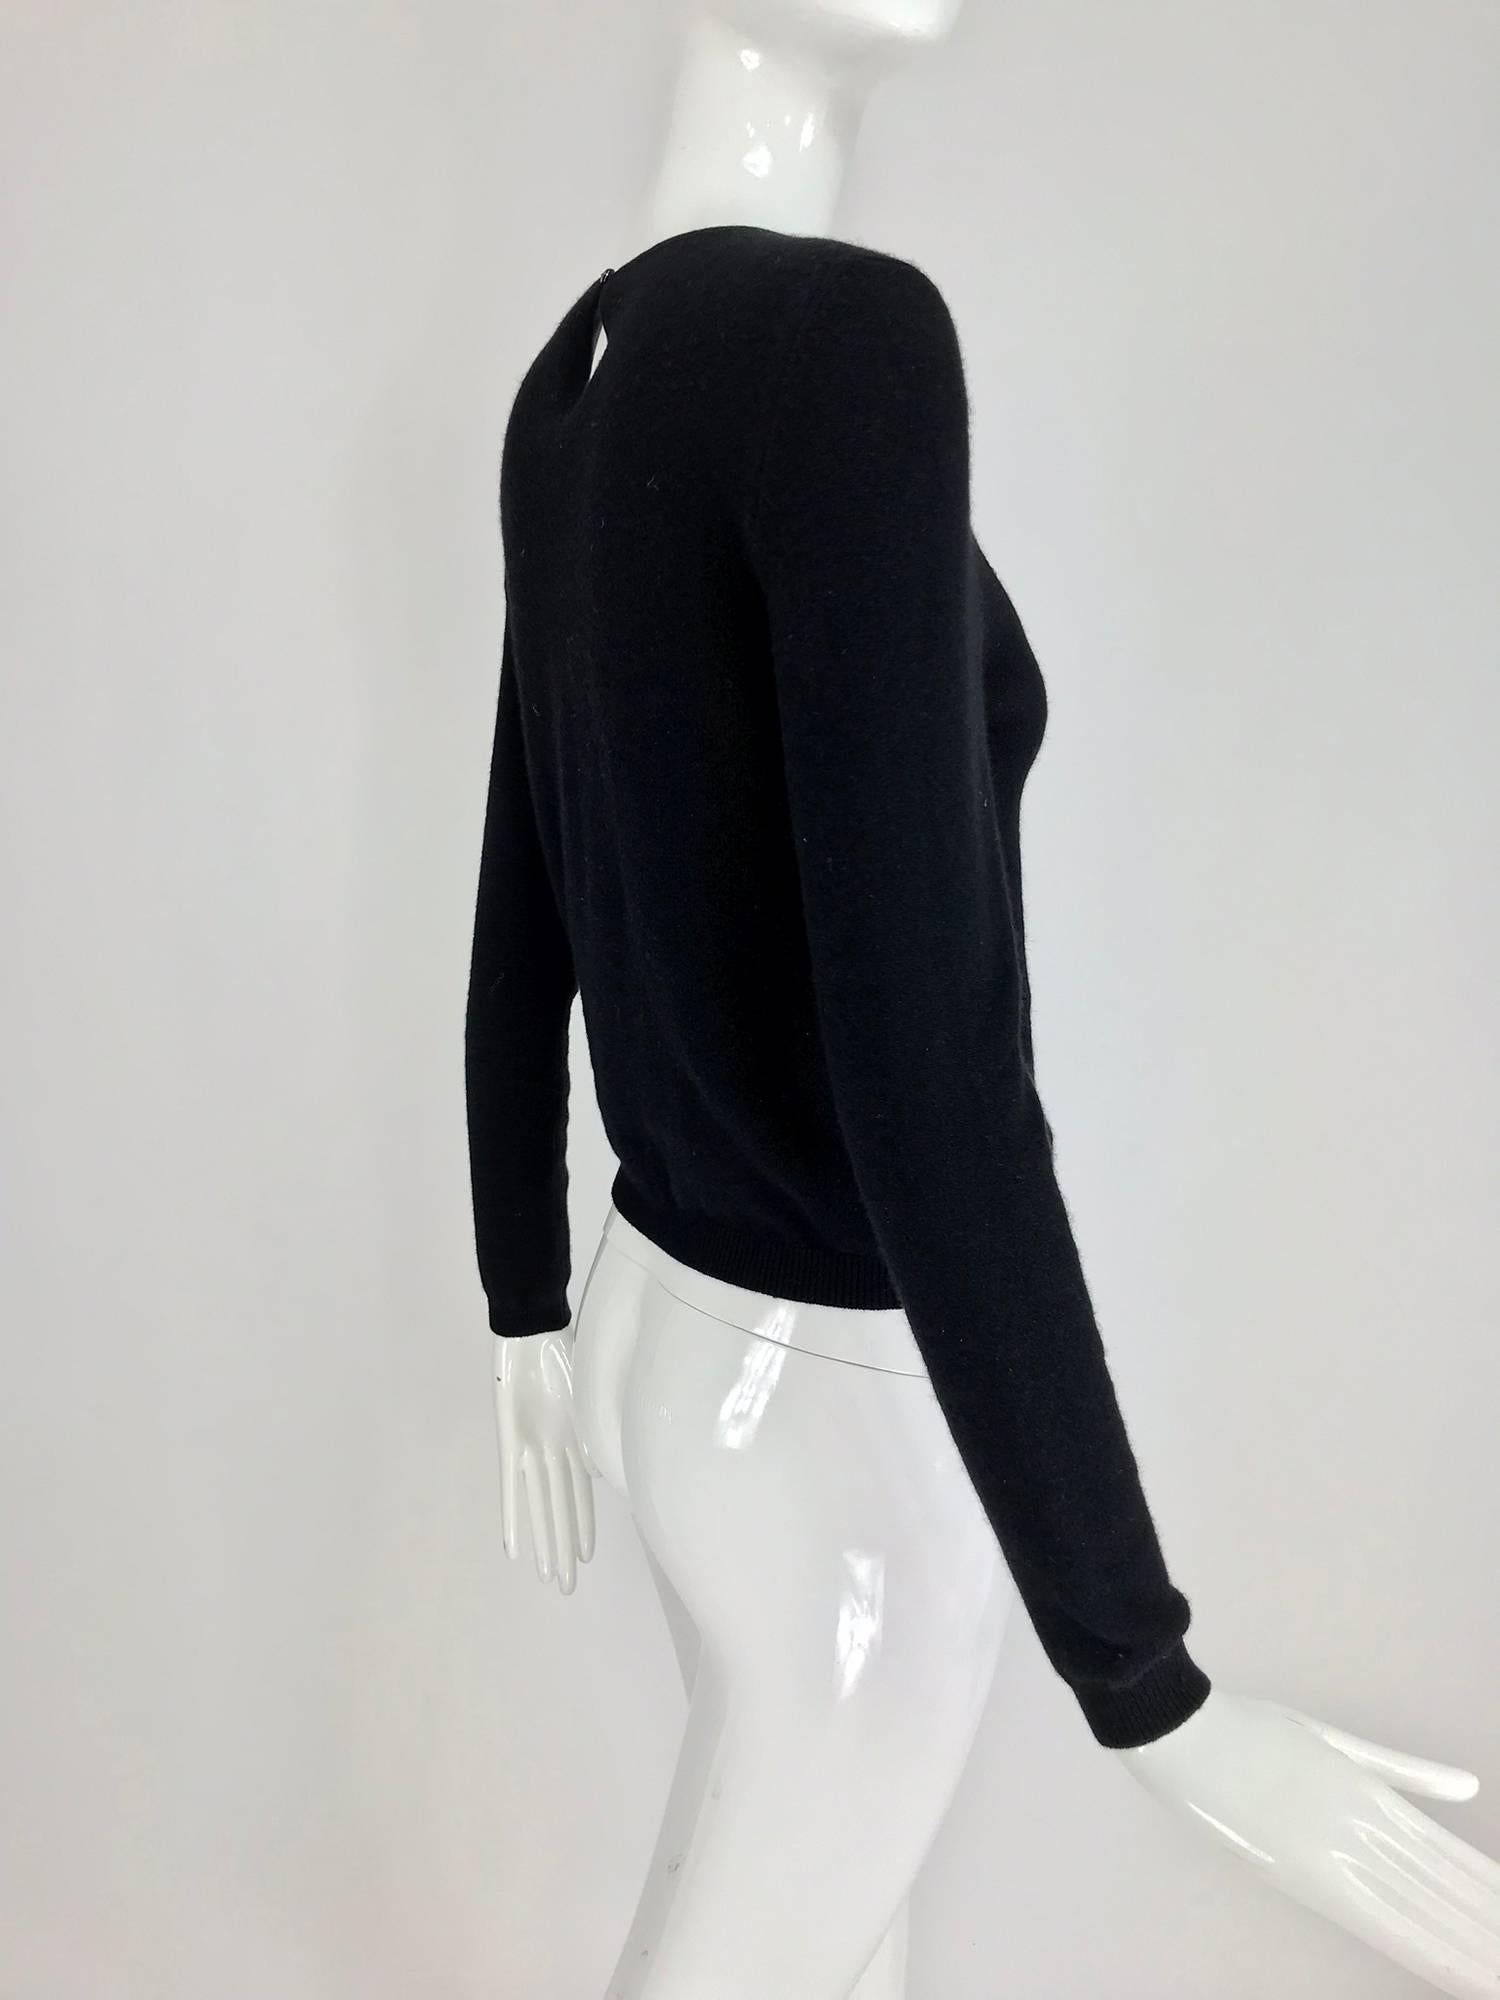 Oscar de la Renta jewel decorated neckline black sweater 1